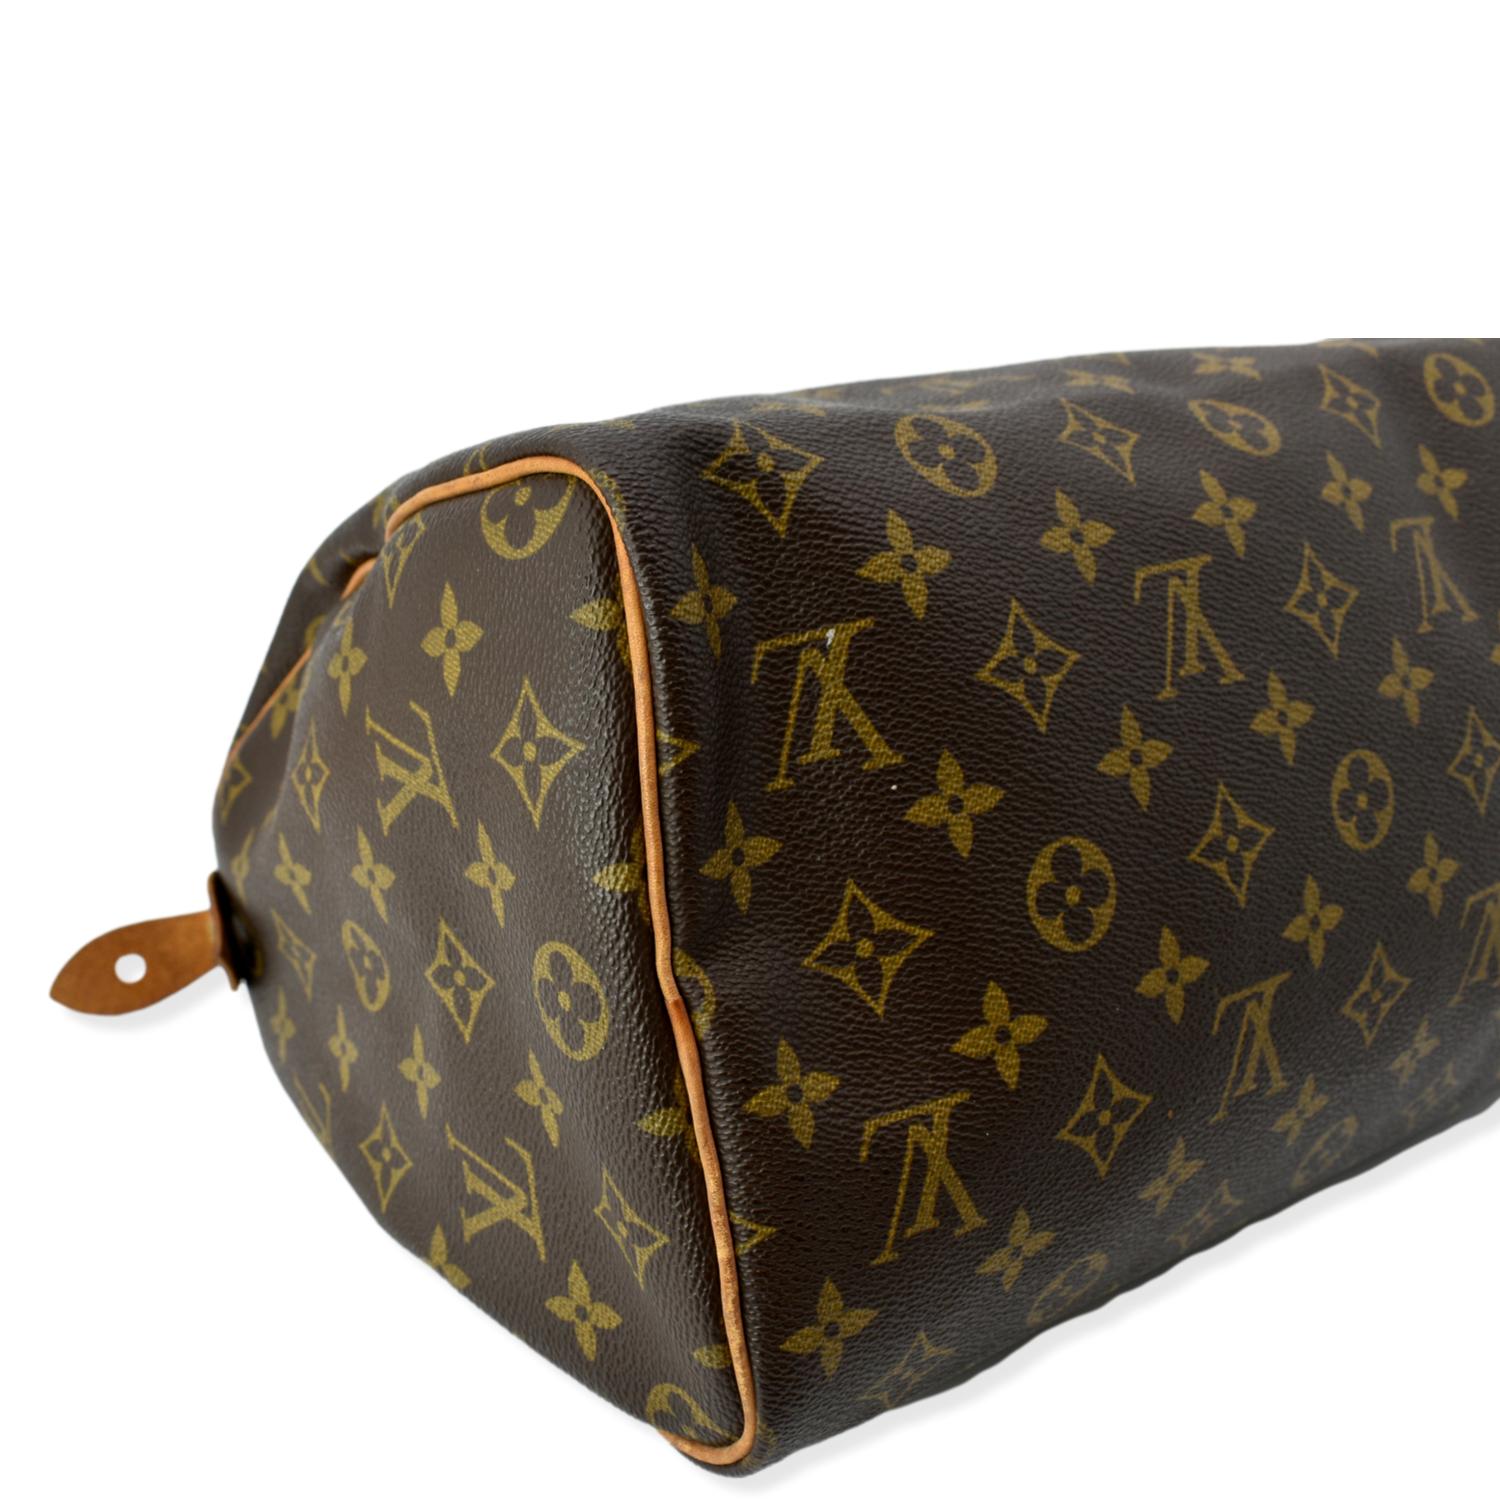 LV Monogram Segur Satchel bag🩷 W/ dust bag 📌Dog bag charm sold